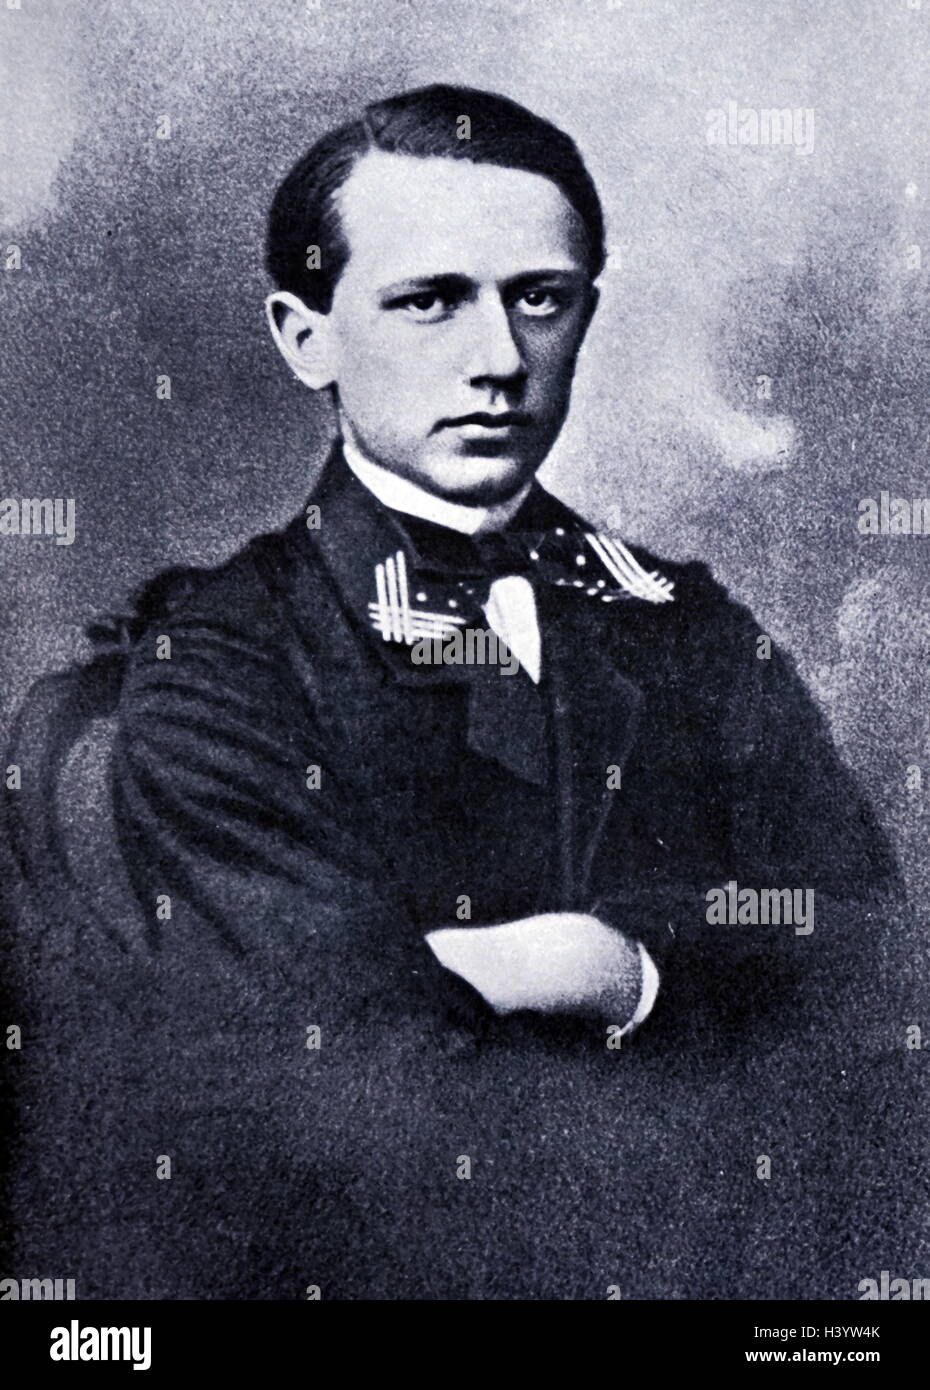 Foto von Pyotr Ilyich Tchaikovsky (1840-1893), russischer Komponist von der Spätromantik. Vom 19. Jahrhundert Stockfoto